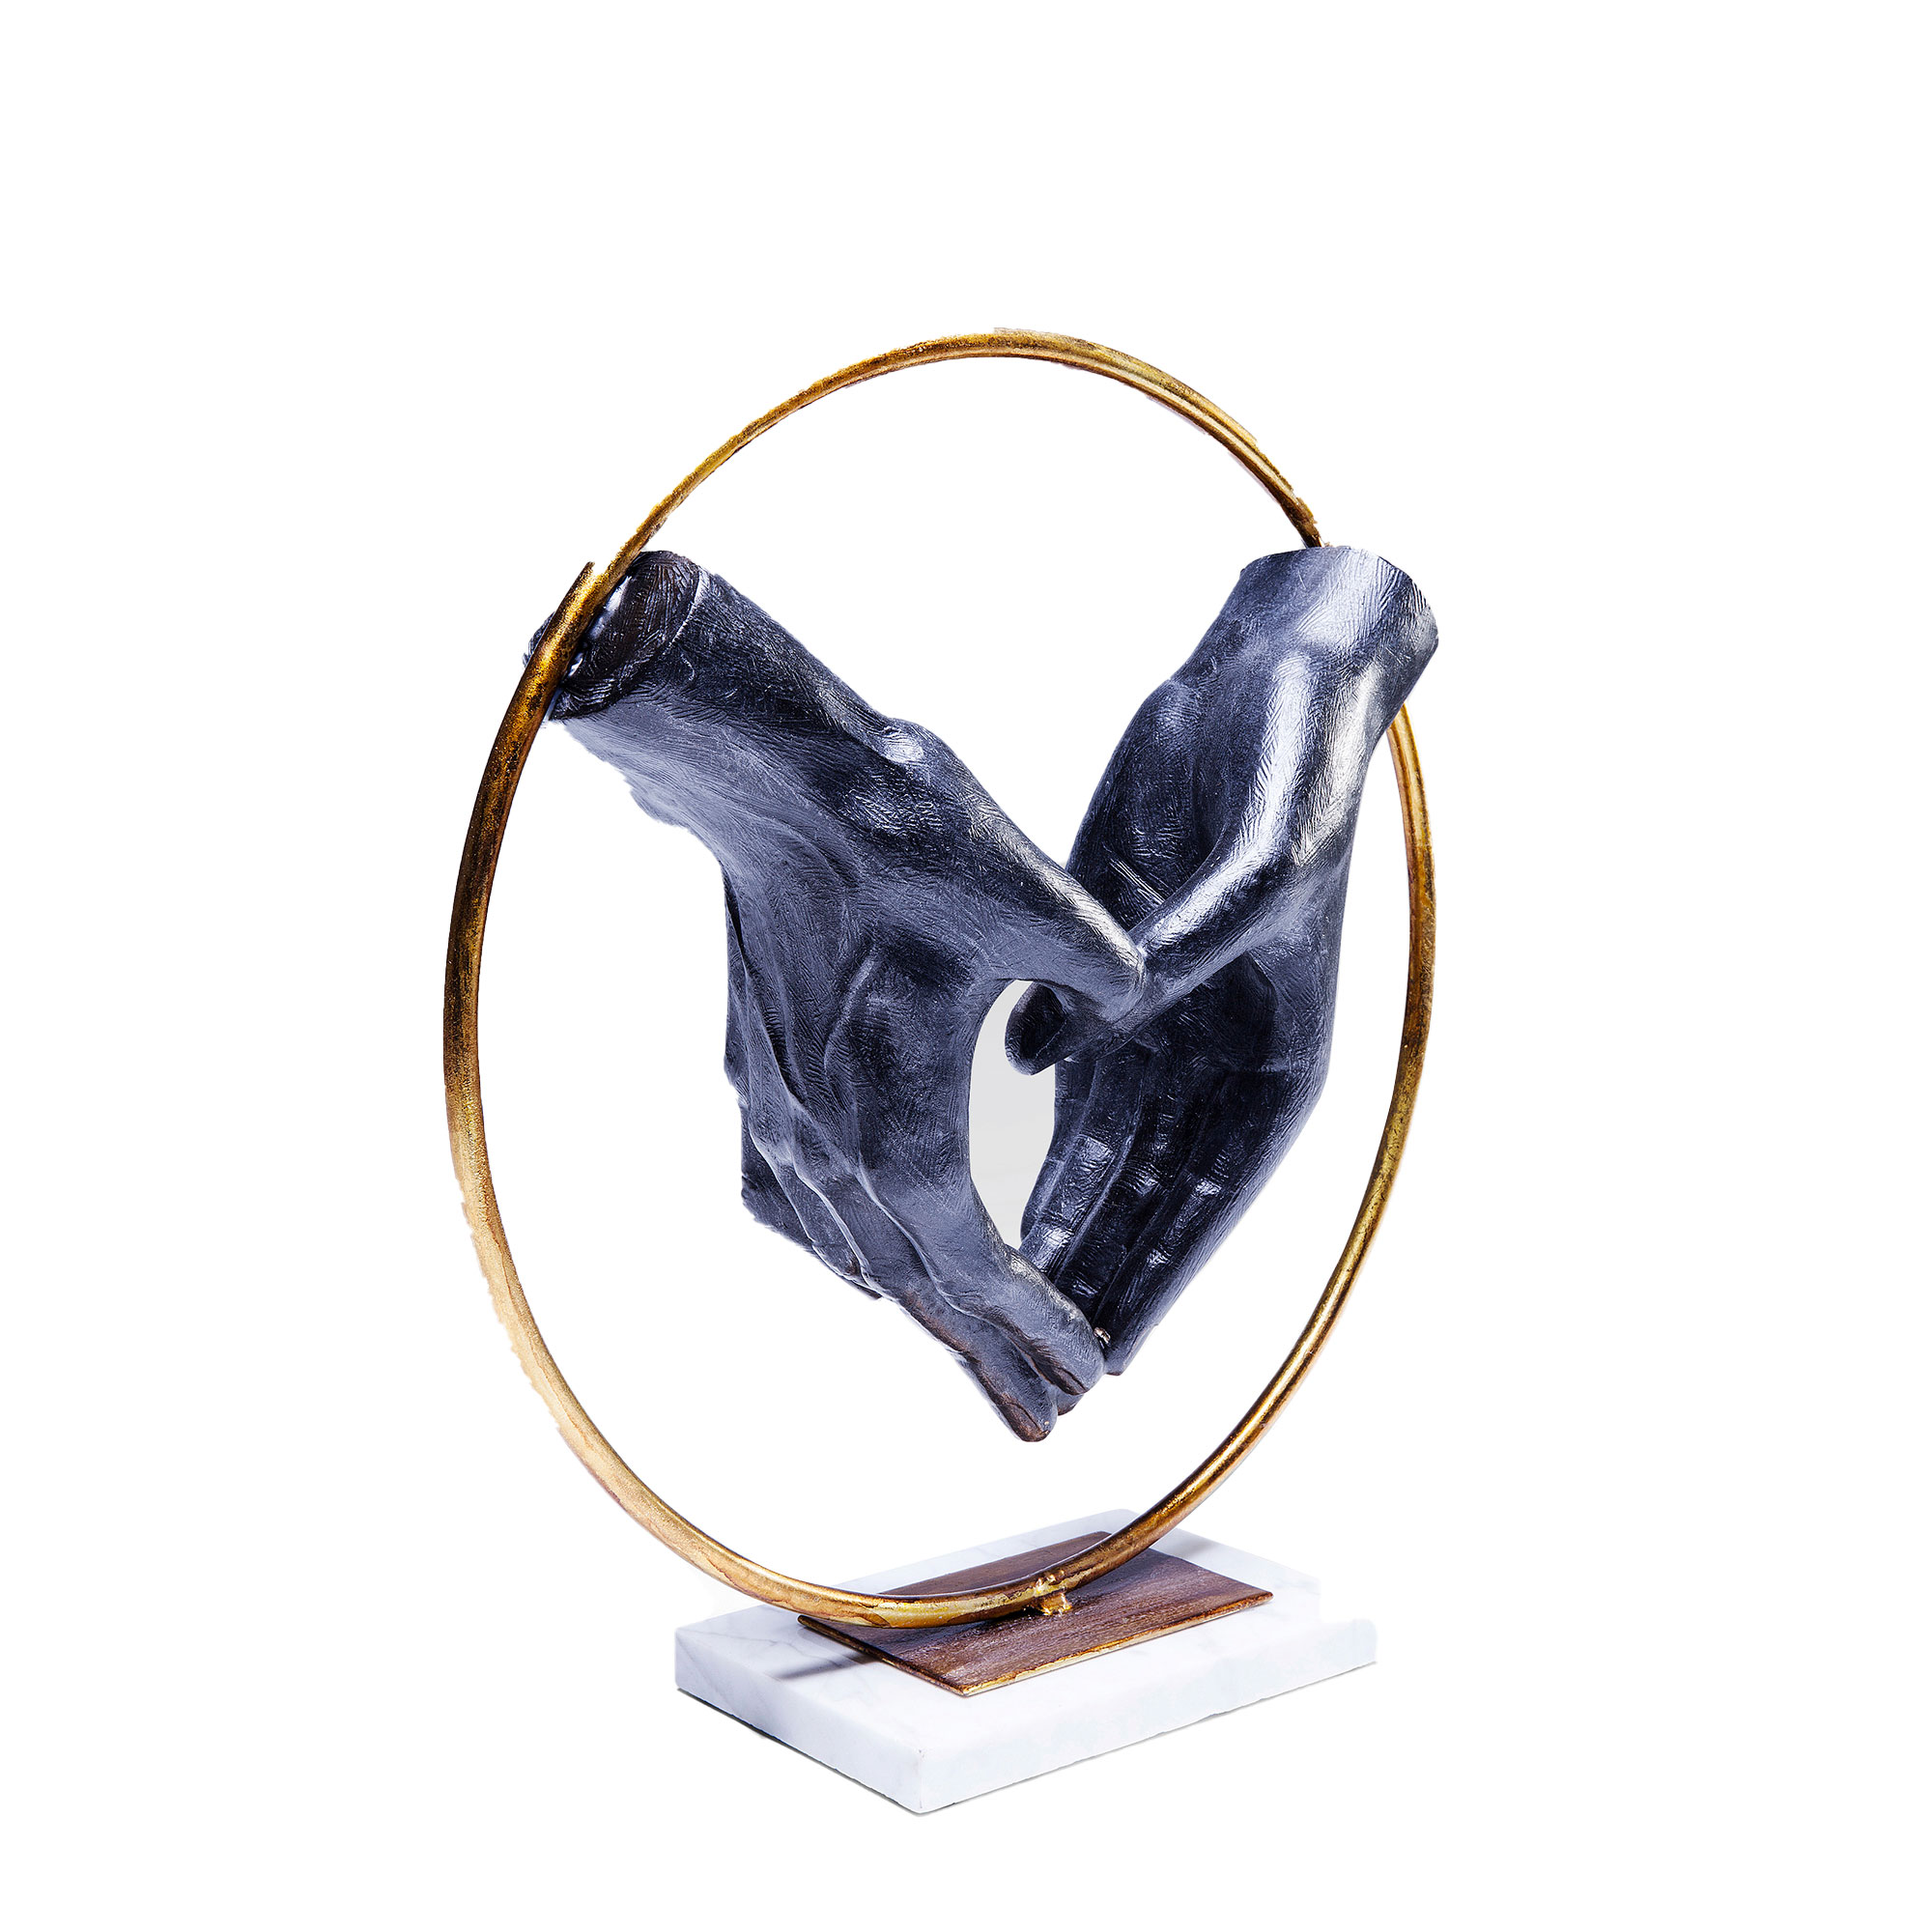 Elements - Metallic Heart Hands Sculpture - Sculptures & Ornaments -  Fishpools